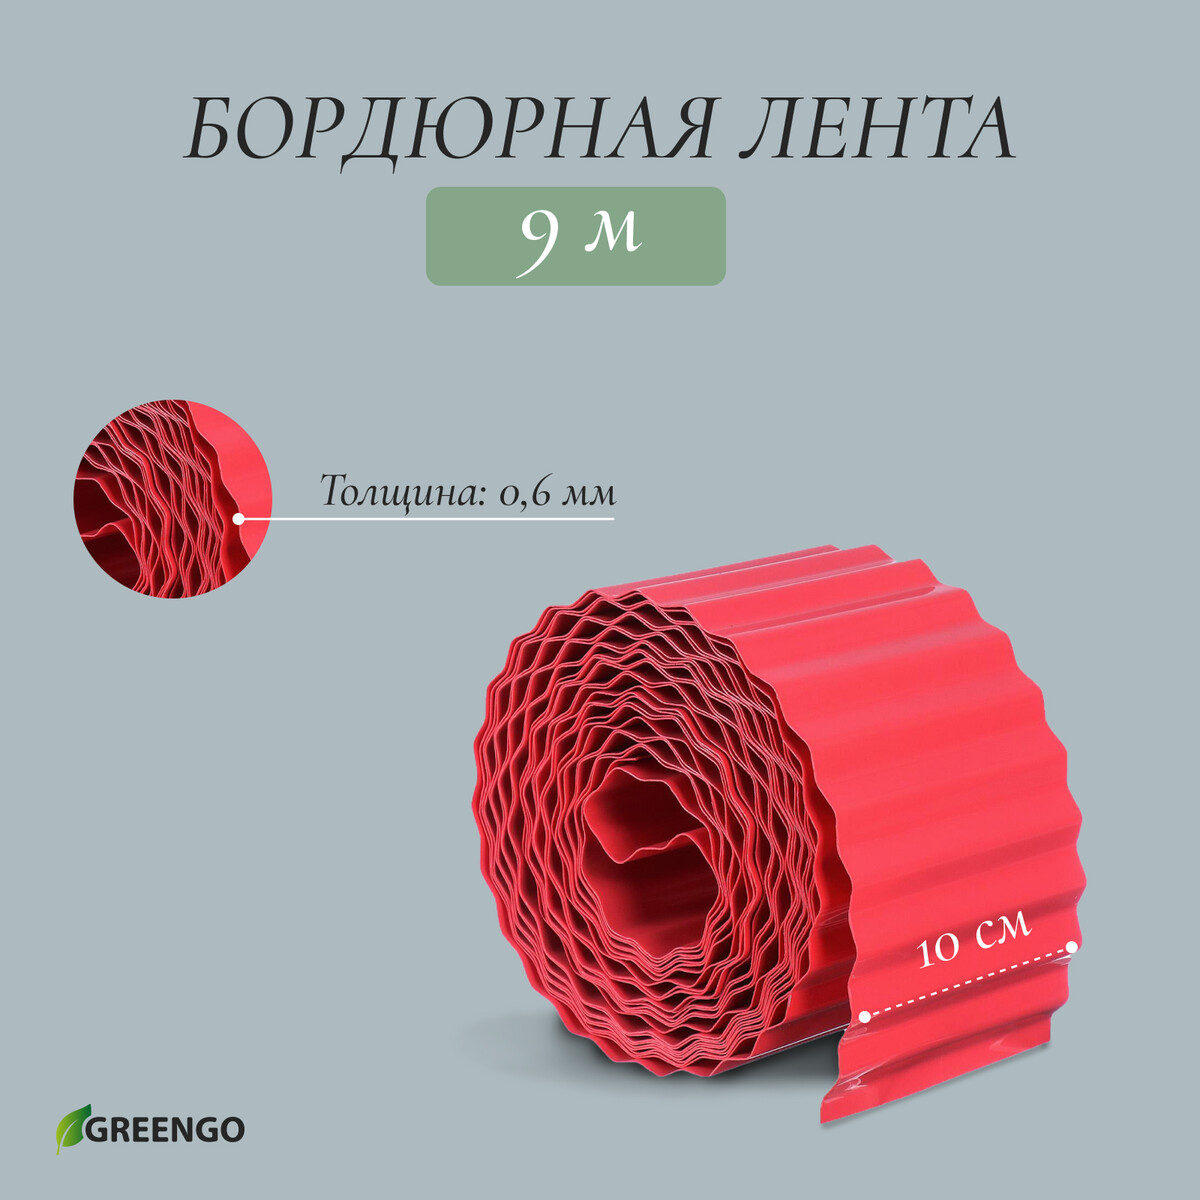 Лента бордюрная, 0.1 × 9 м, толщина 0.6 мм, пластиковая, гофра, красная, greengo